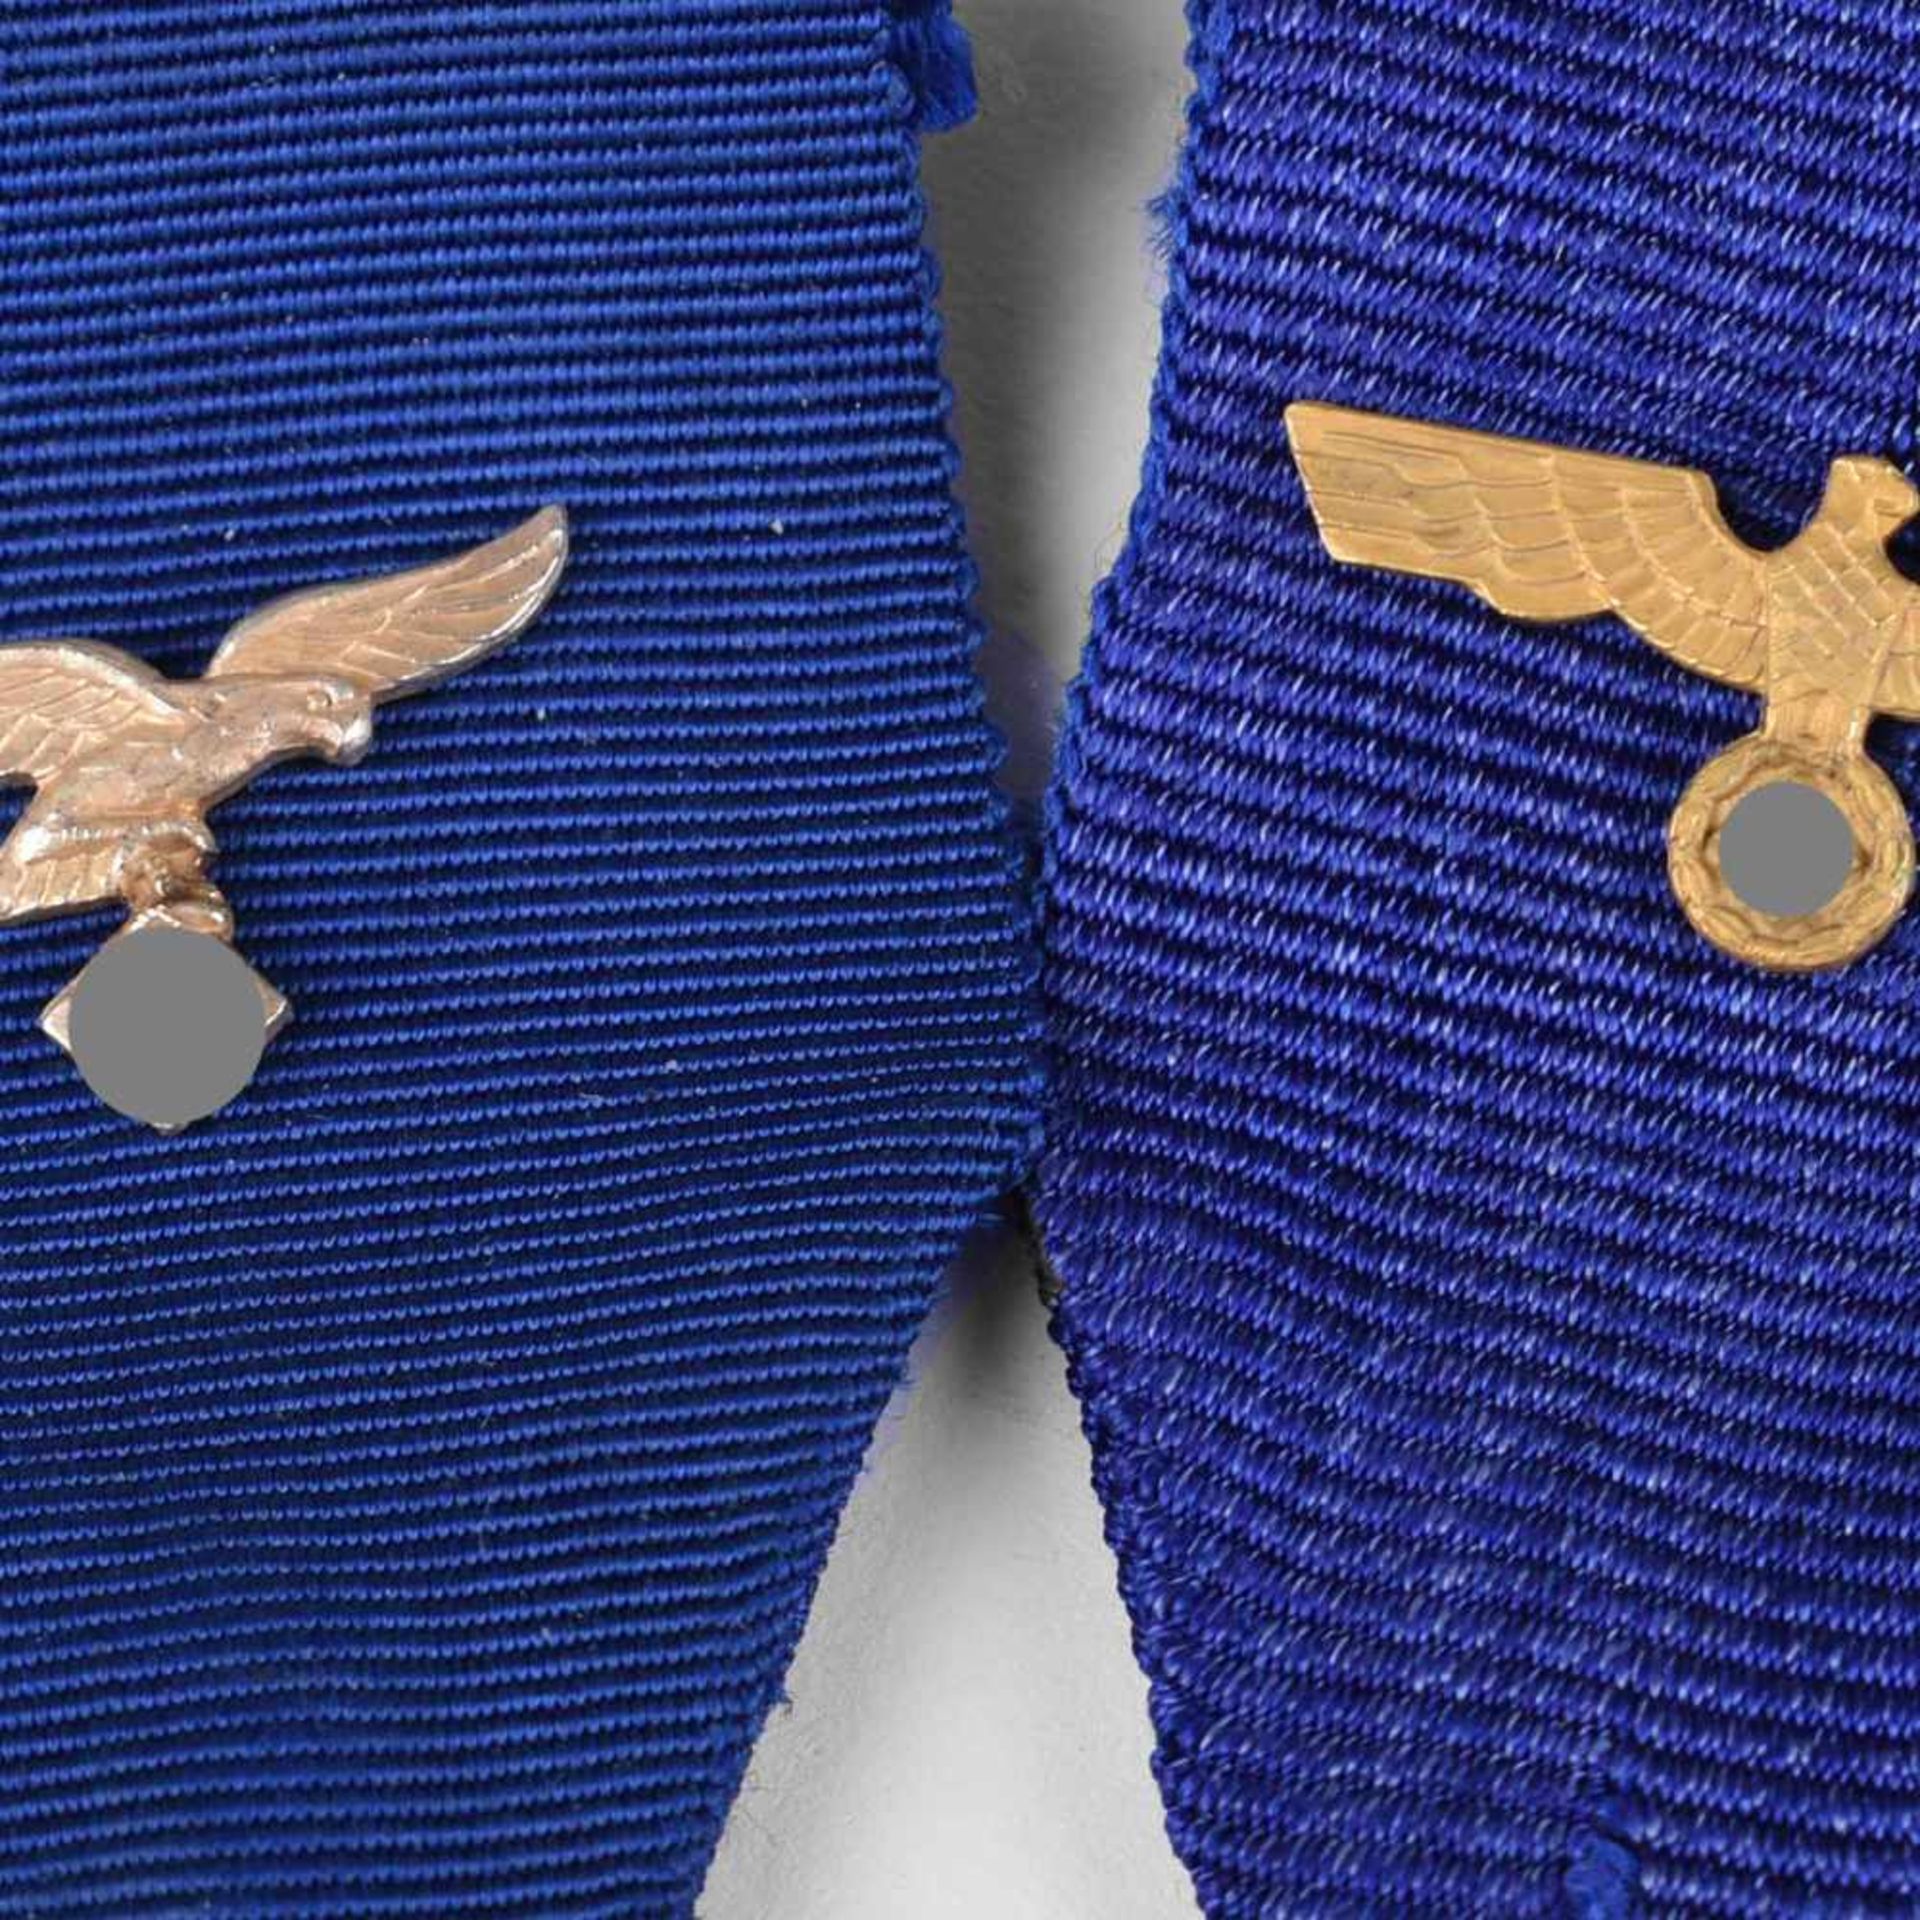 Auszeichnungen III. Reich insg. zwei Bänder für die Dienstauszeichnung, blaues Band mit